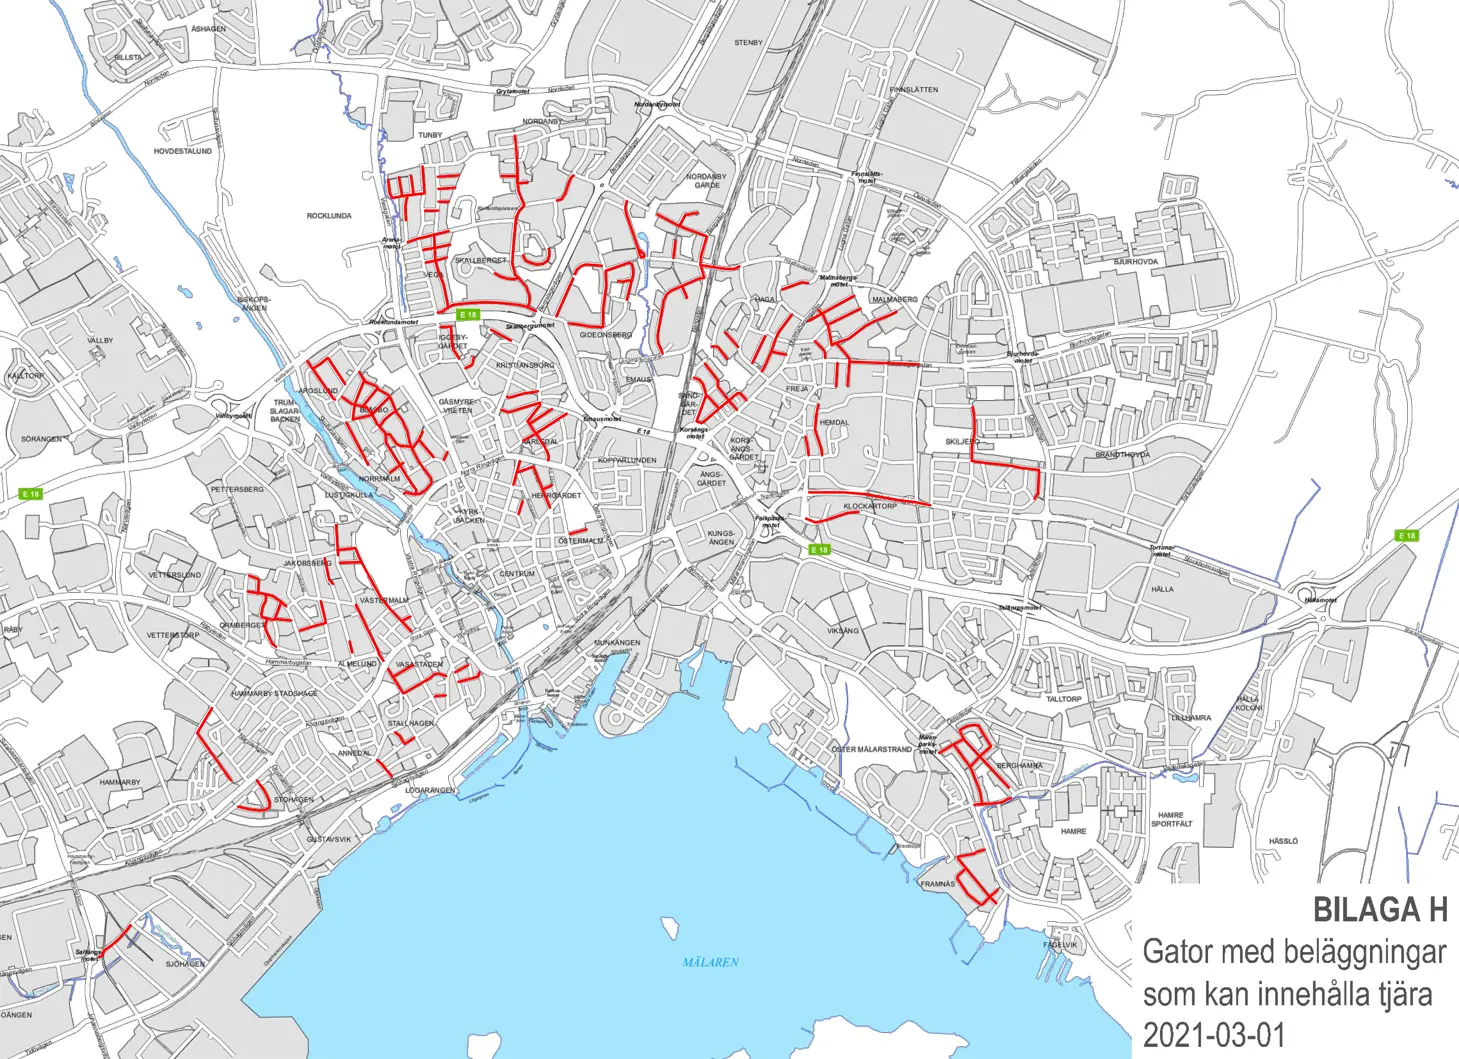 Karta över Västerås som visar gator med beläggningar som kan innehålla tjära. 